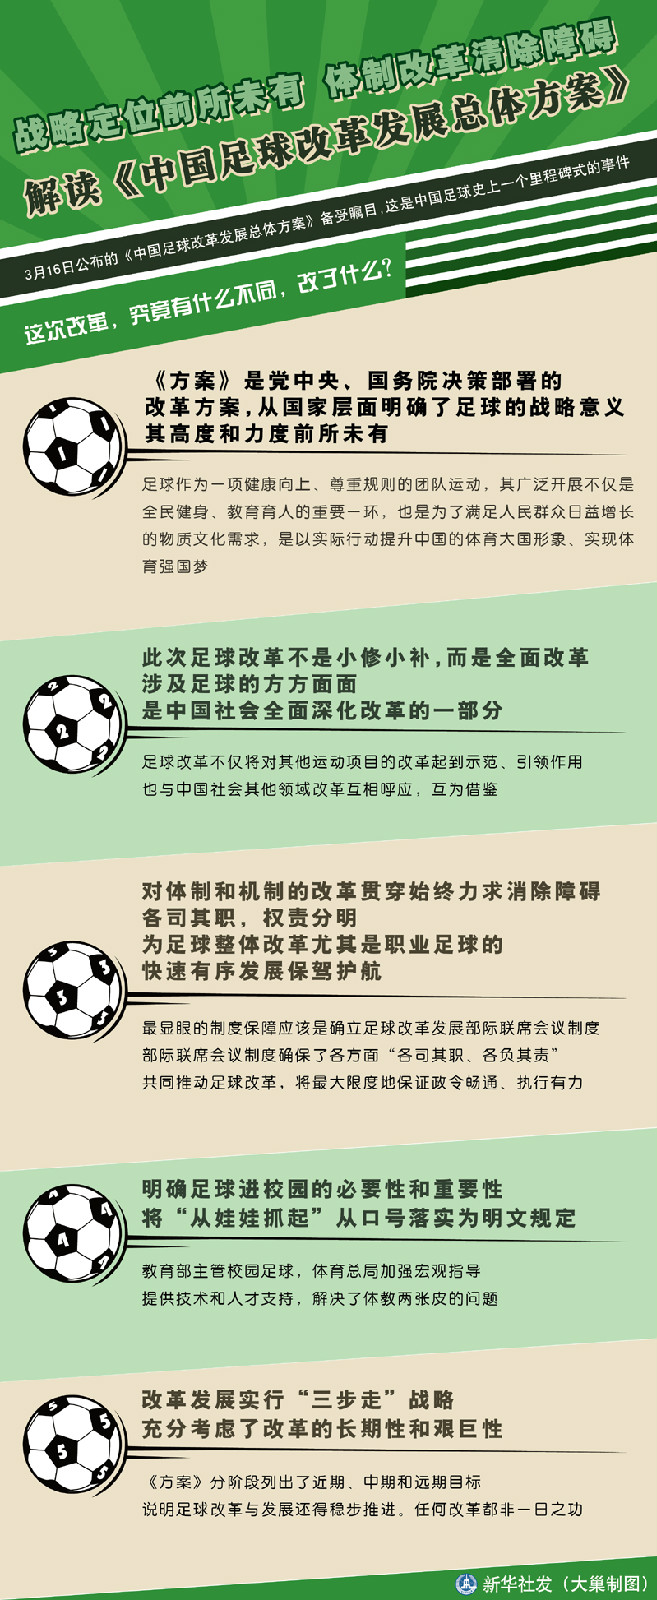 國務院辦公廳關於印發中國足球改革發展總體方案的通知